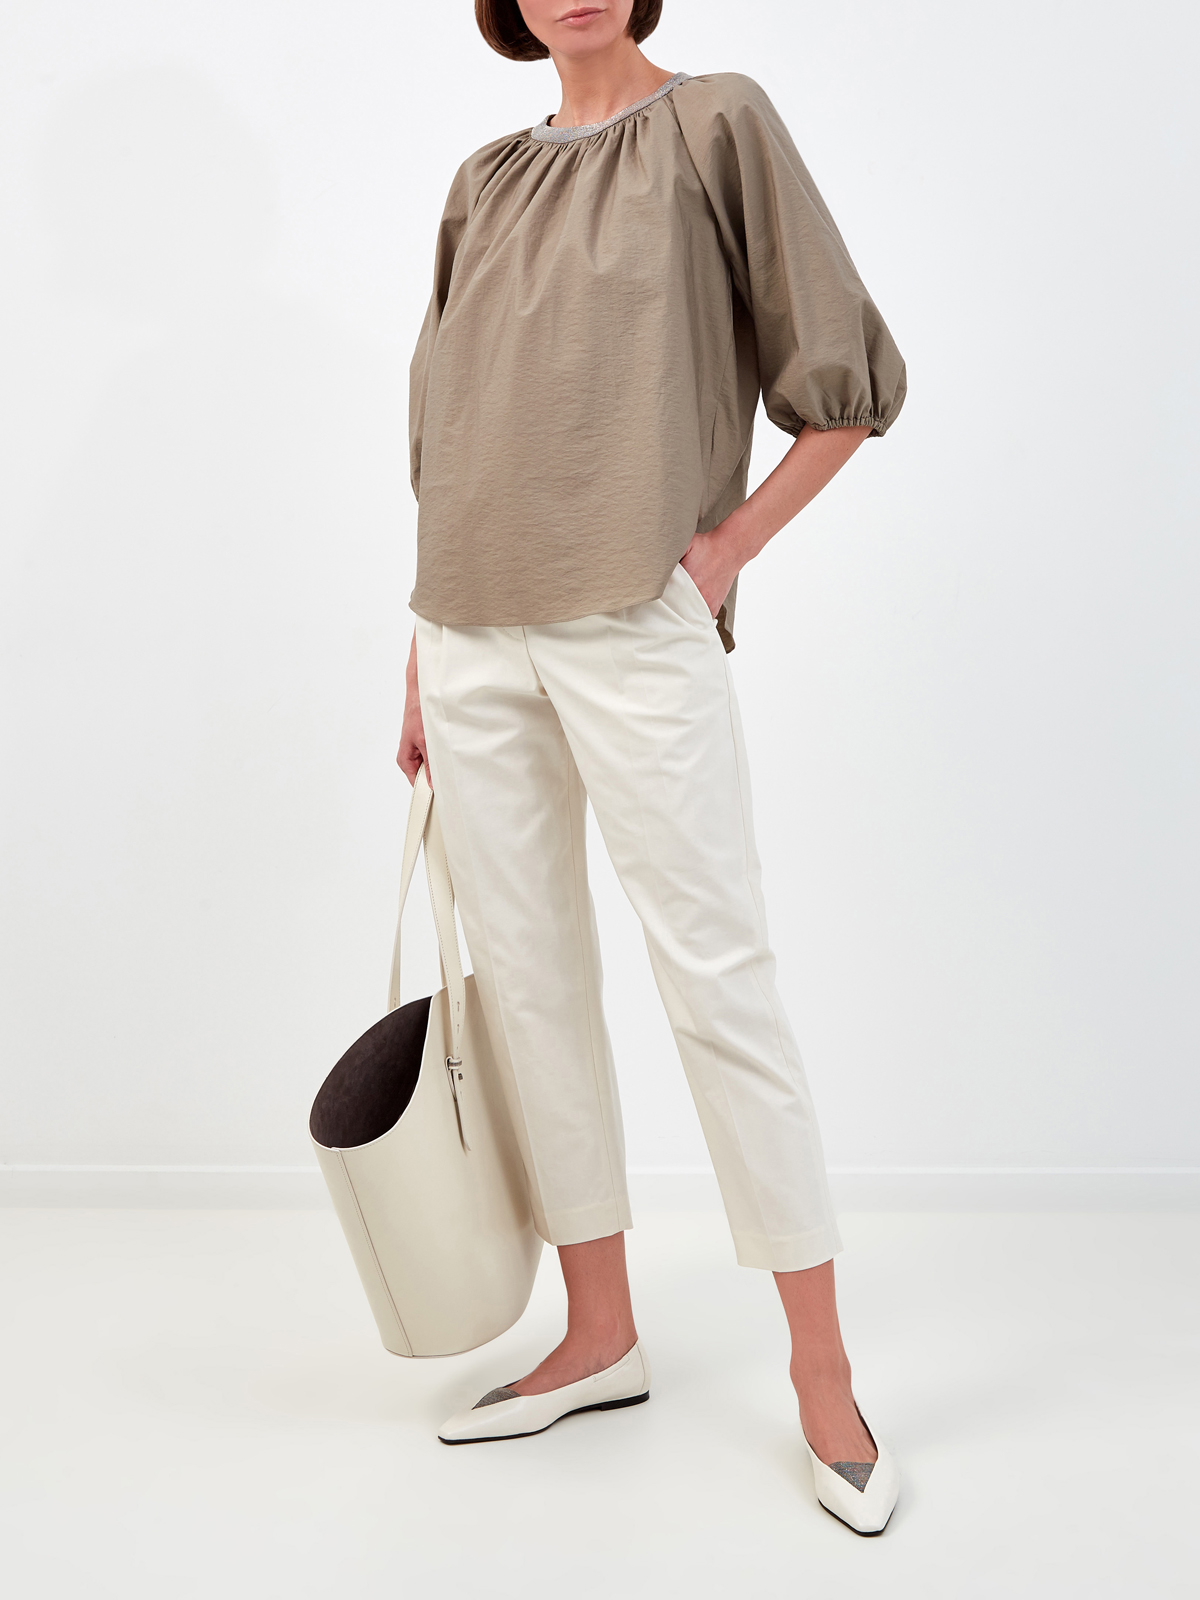 Блуза с мерцающим декором Мониль и архитектурными рукавами BRUNELLO CUCINELLI, цвет коричневый, размер 42;44;46;40 - фото 2